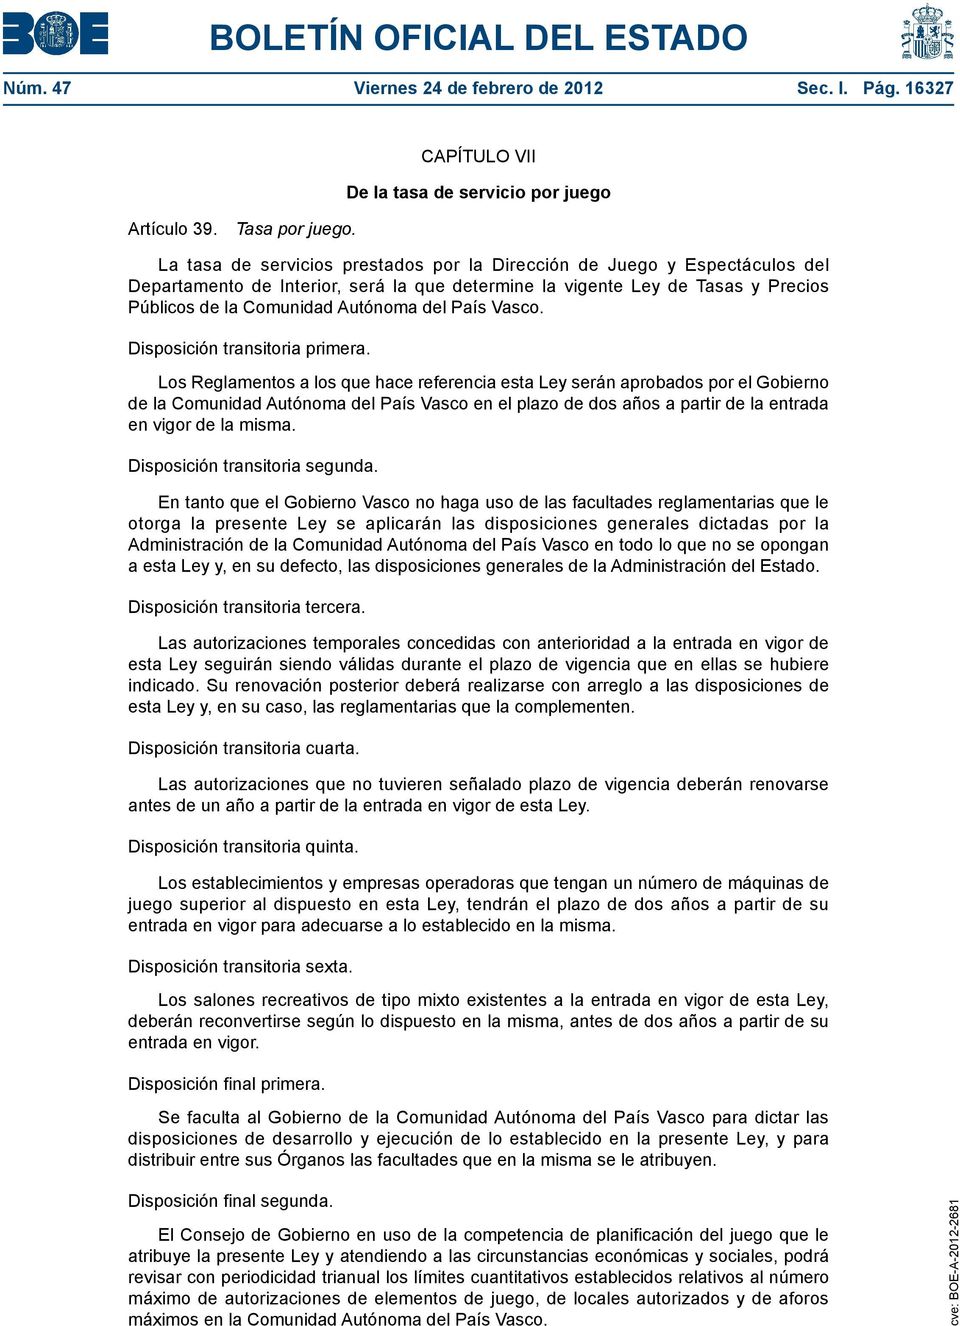 Precios Públicos de la Comunidad Autónoma del País Vasco. Disposición transitoria primera.